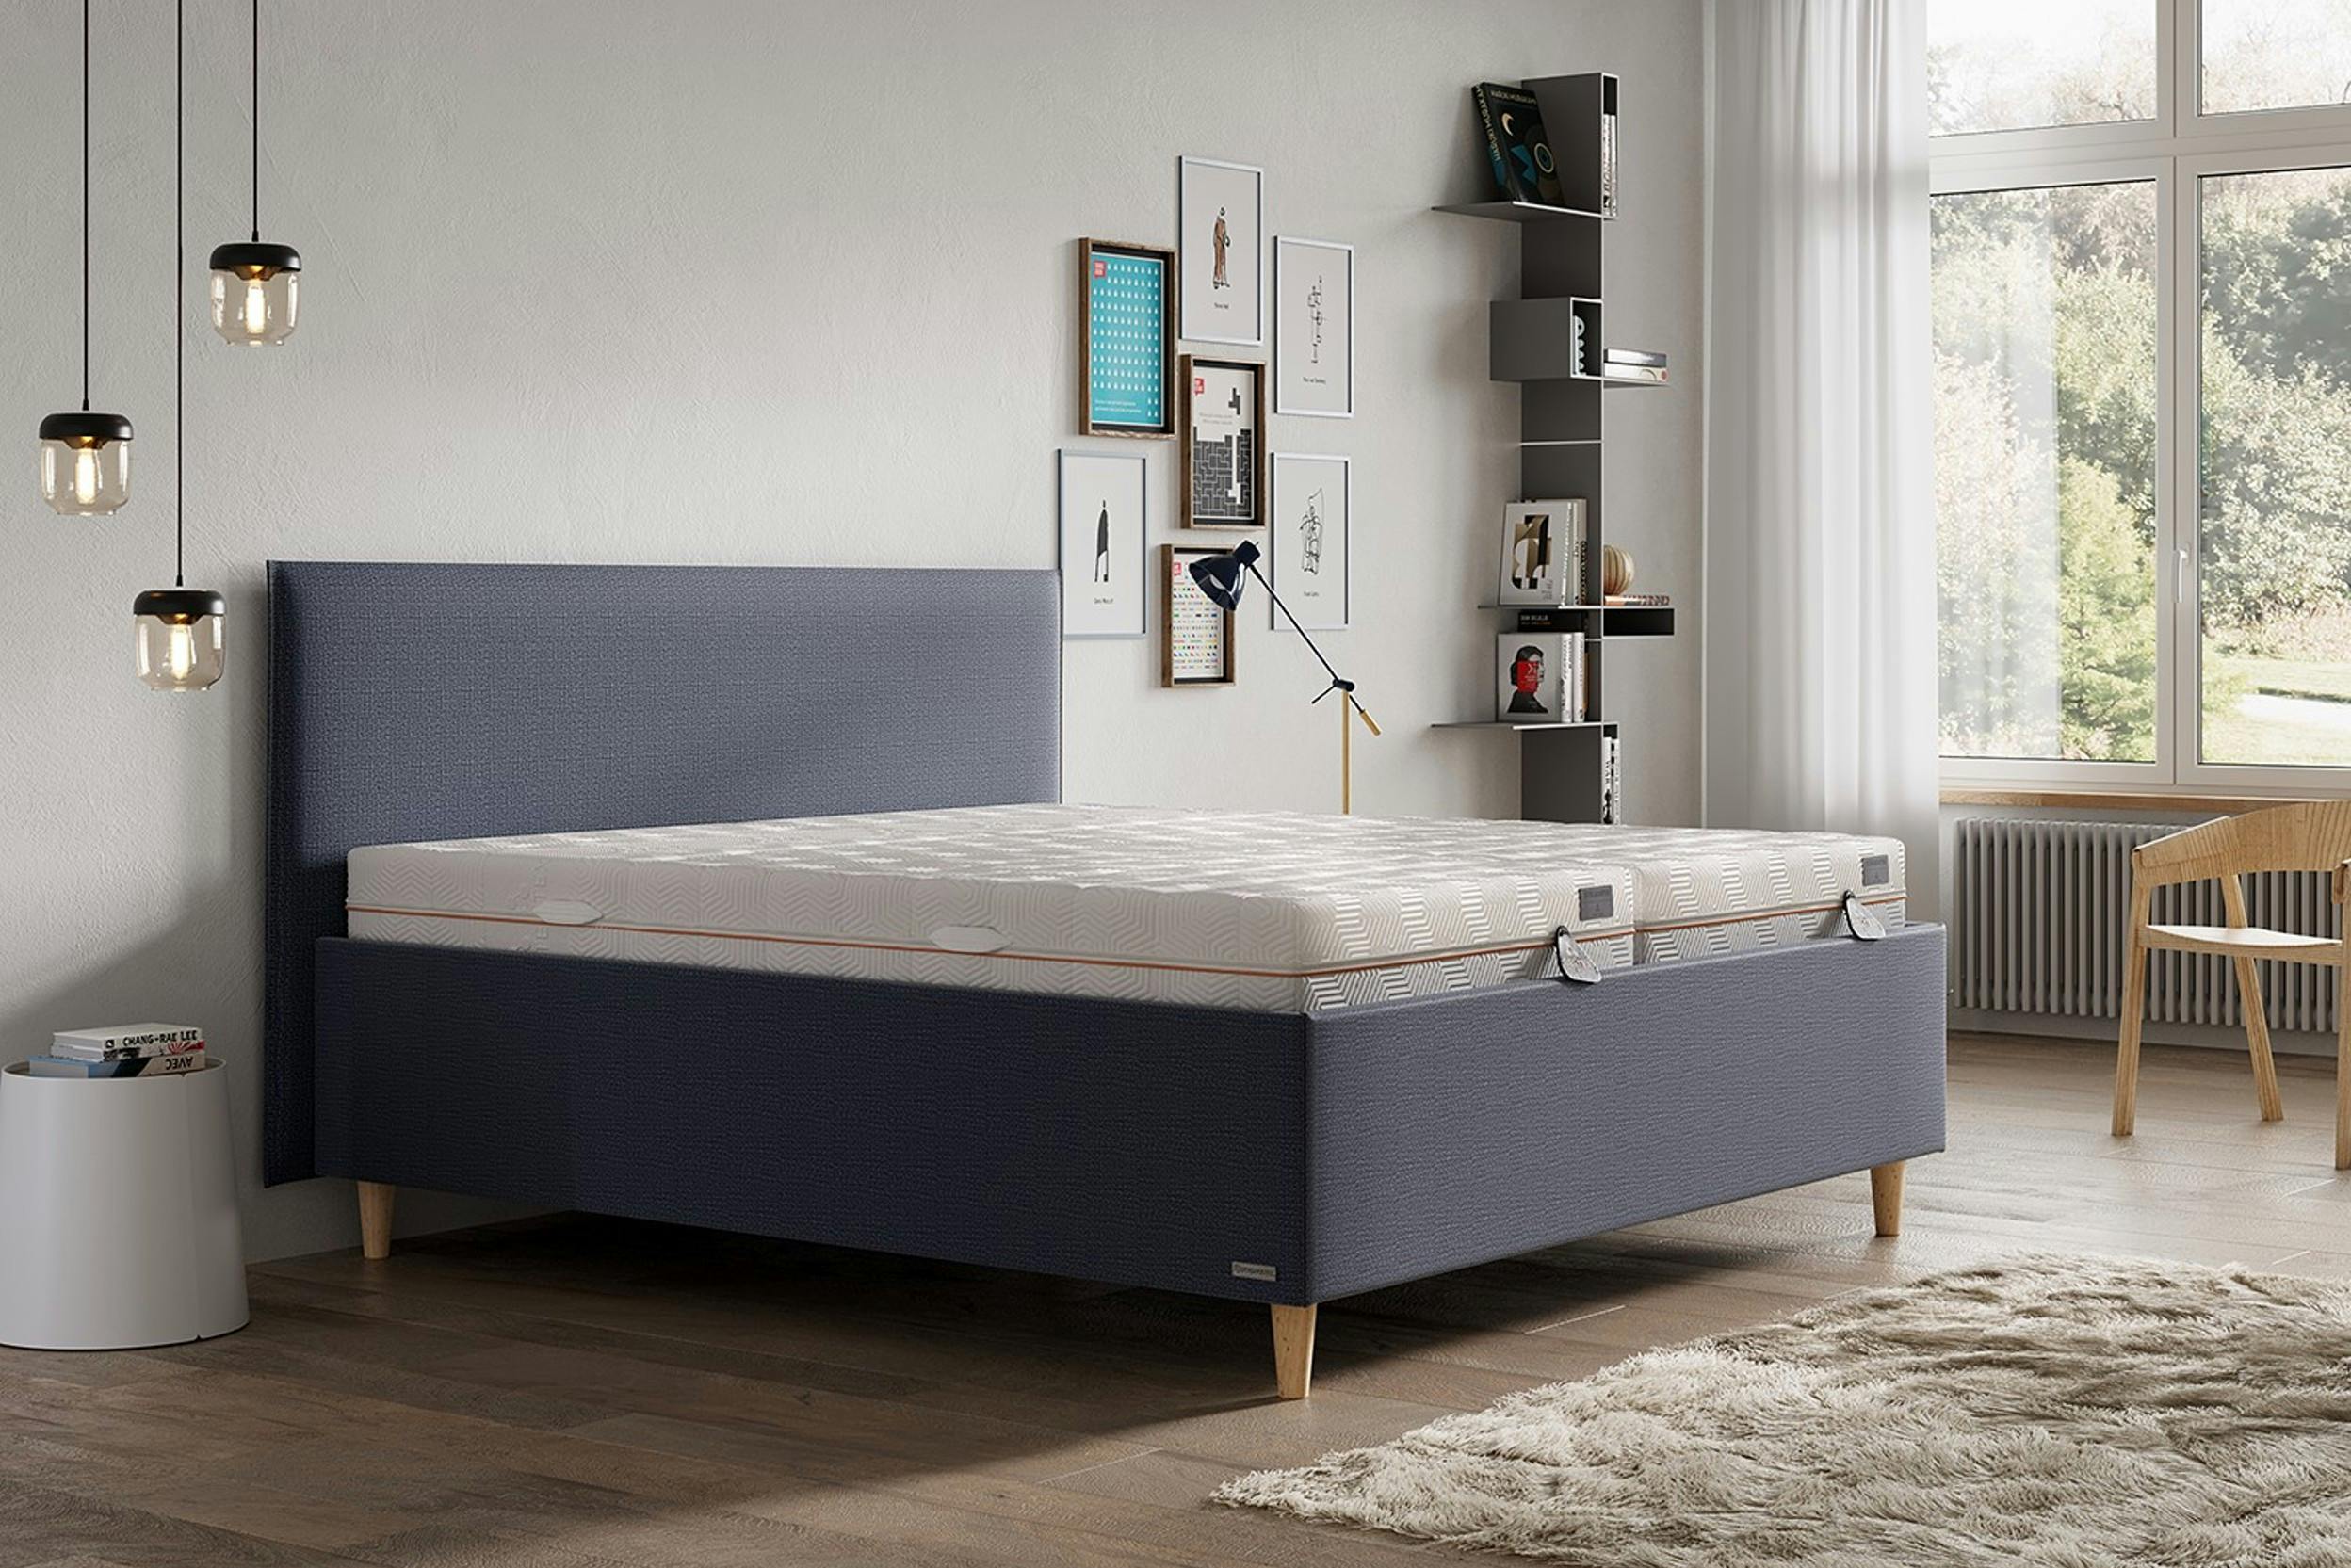 Graues Polsterbett mit zwei Matratzen in einem modern eingerichtetem Zimmer